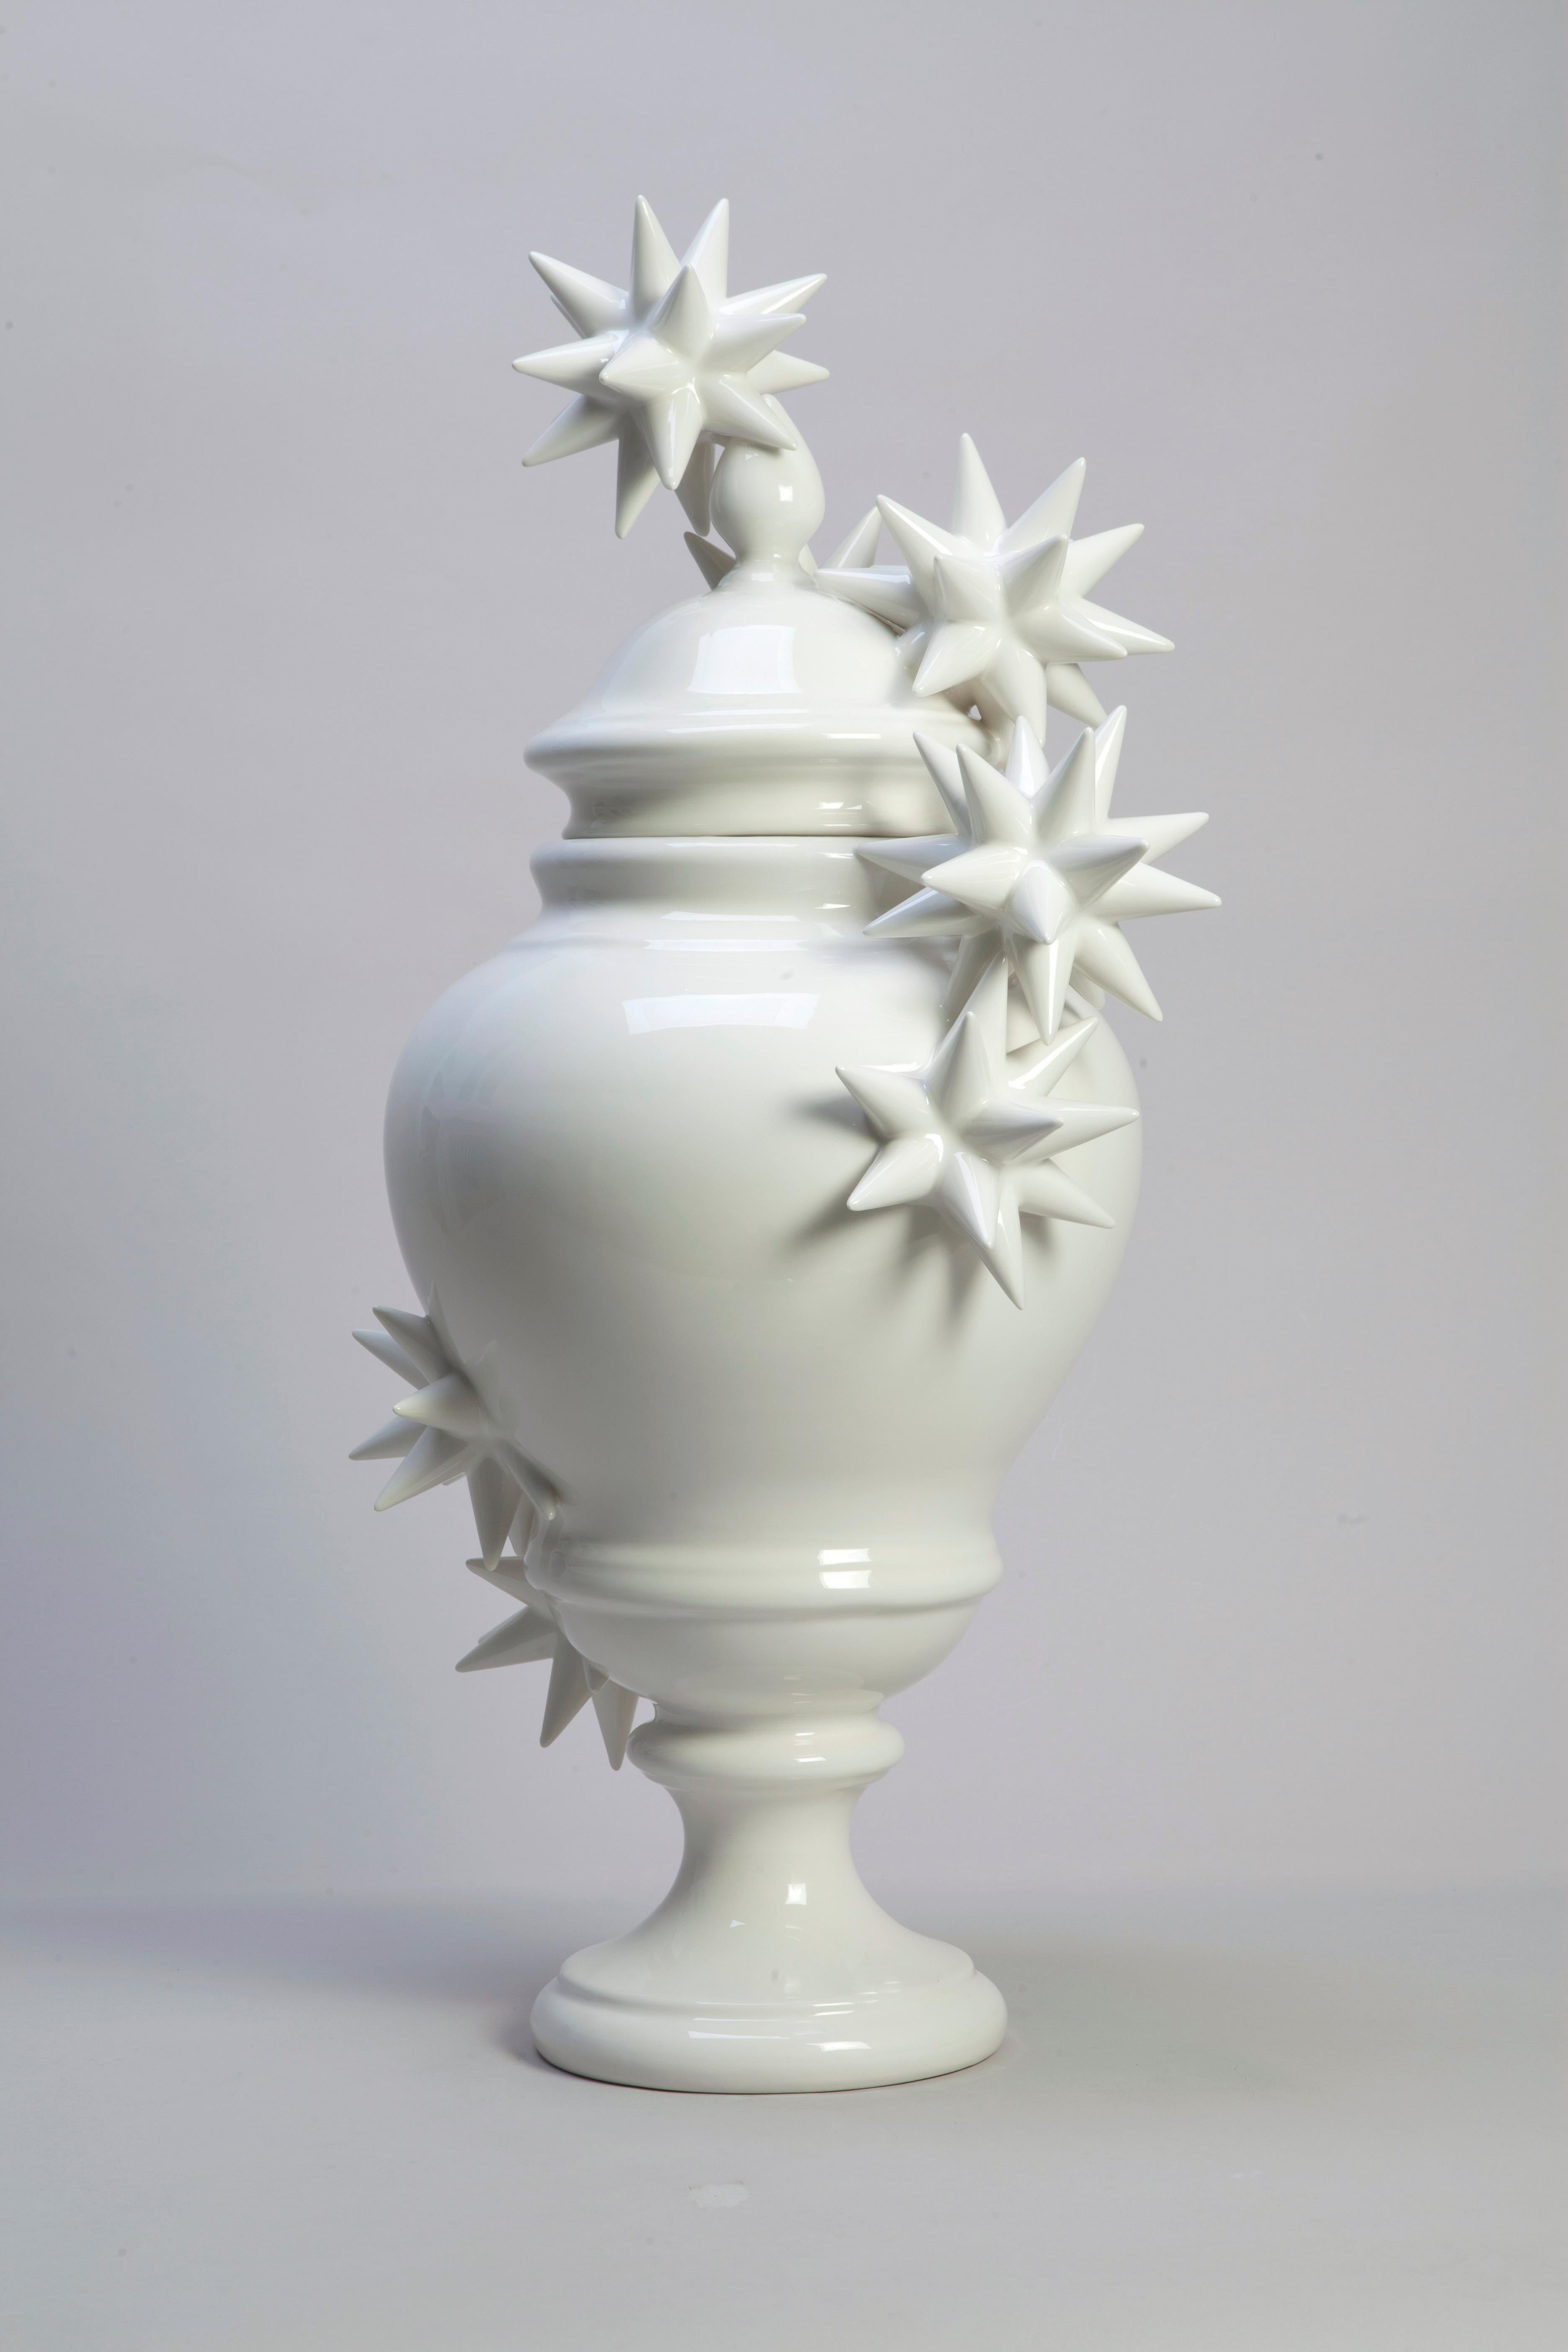 Weiße Vase mit Sternen, Einzelstück, 2017, glasiertes Steingut, 36 x 76 cm hoch. Einzigartiges, vom Künstler signiertes Stück. 

Andrea Salvatori (Italien, 1975) ist ein bildender Künstler, der mit Keramik arbeitet, um ironische und witzige